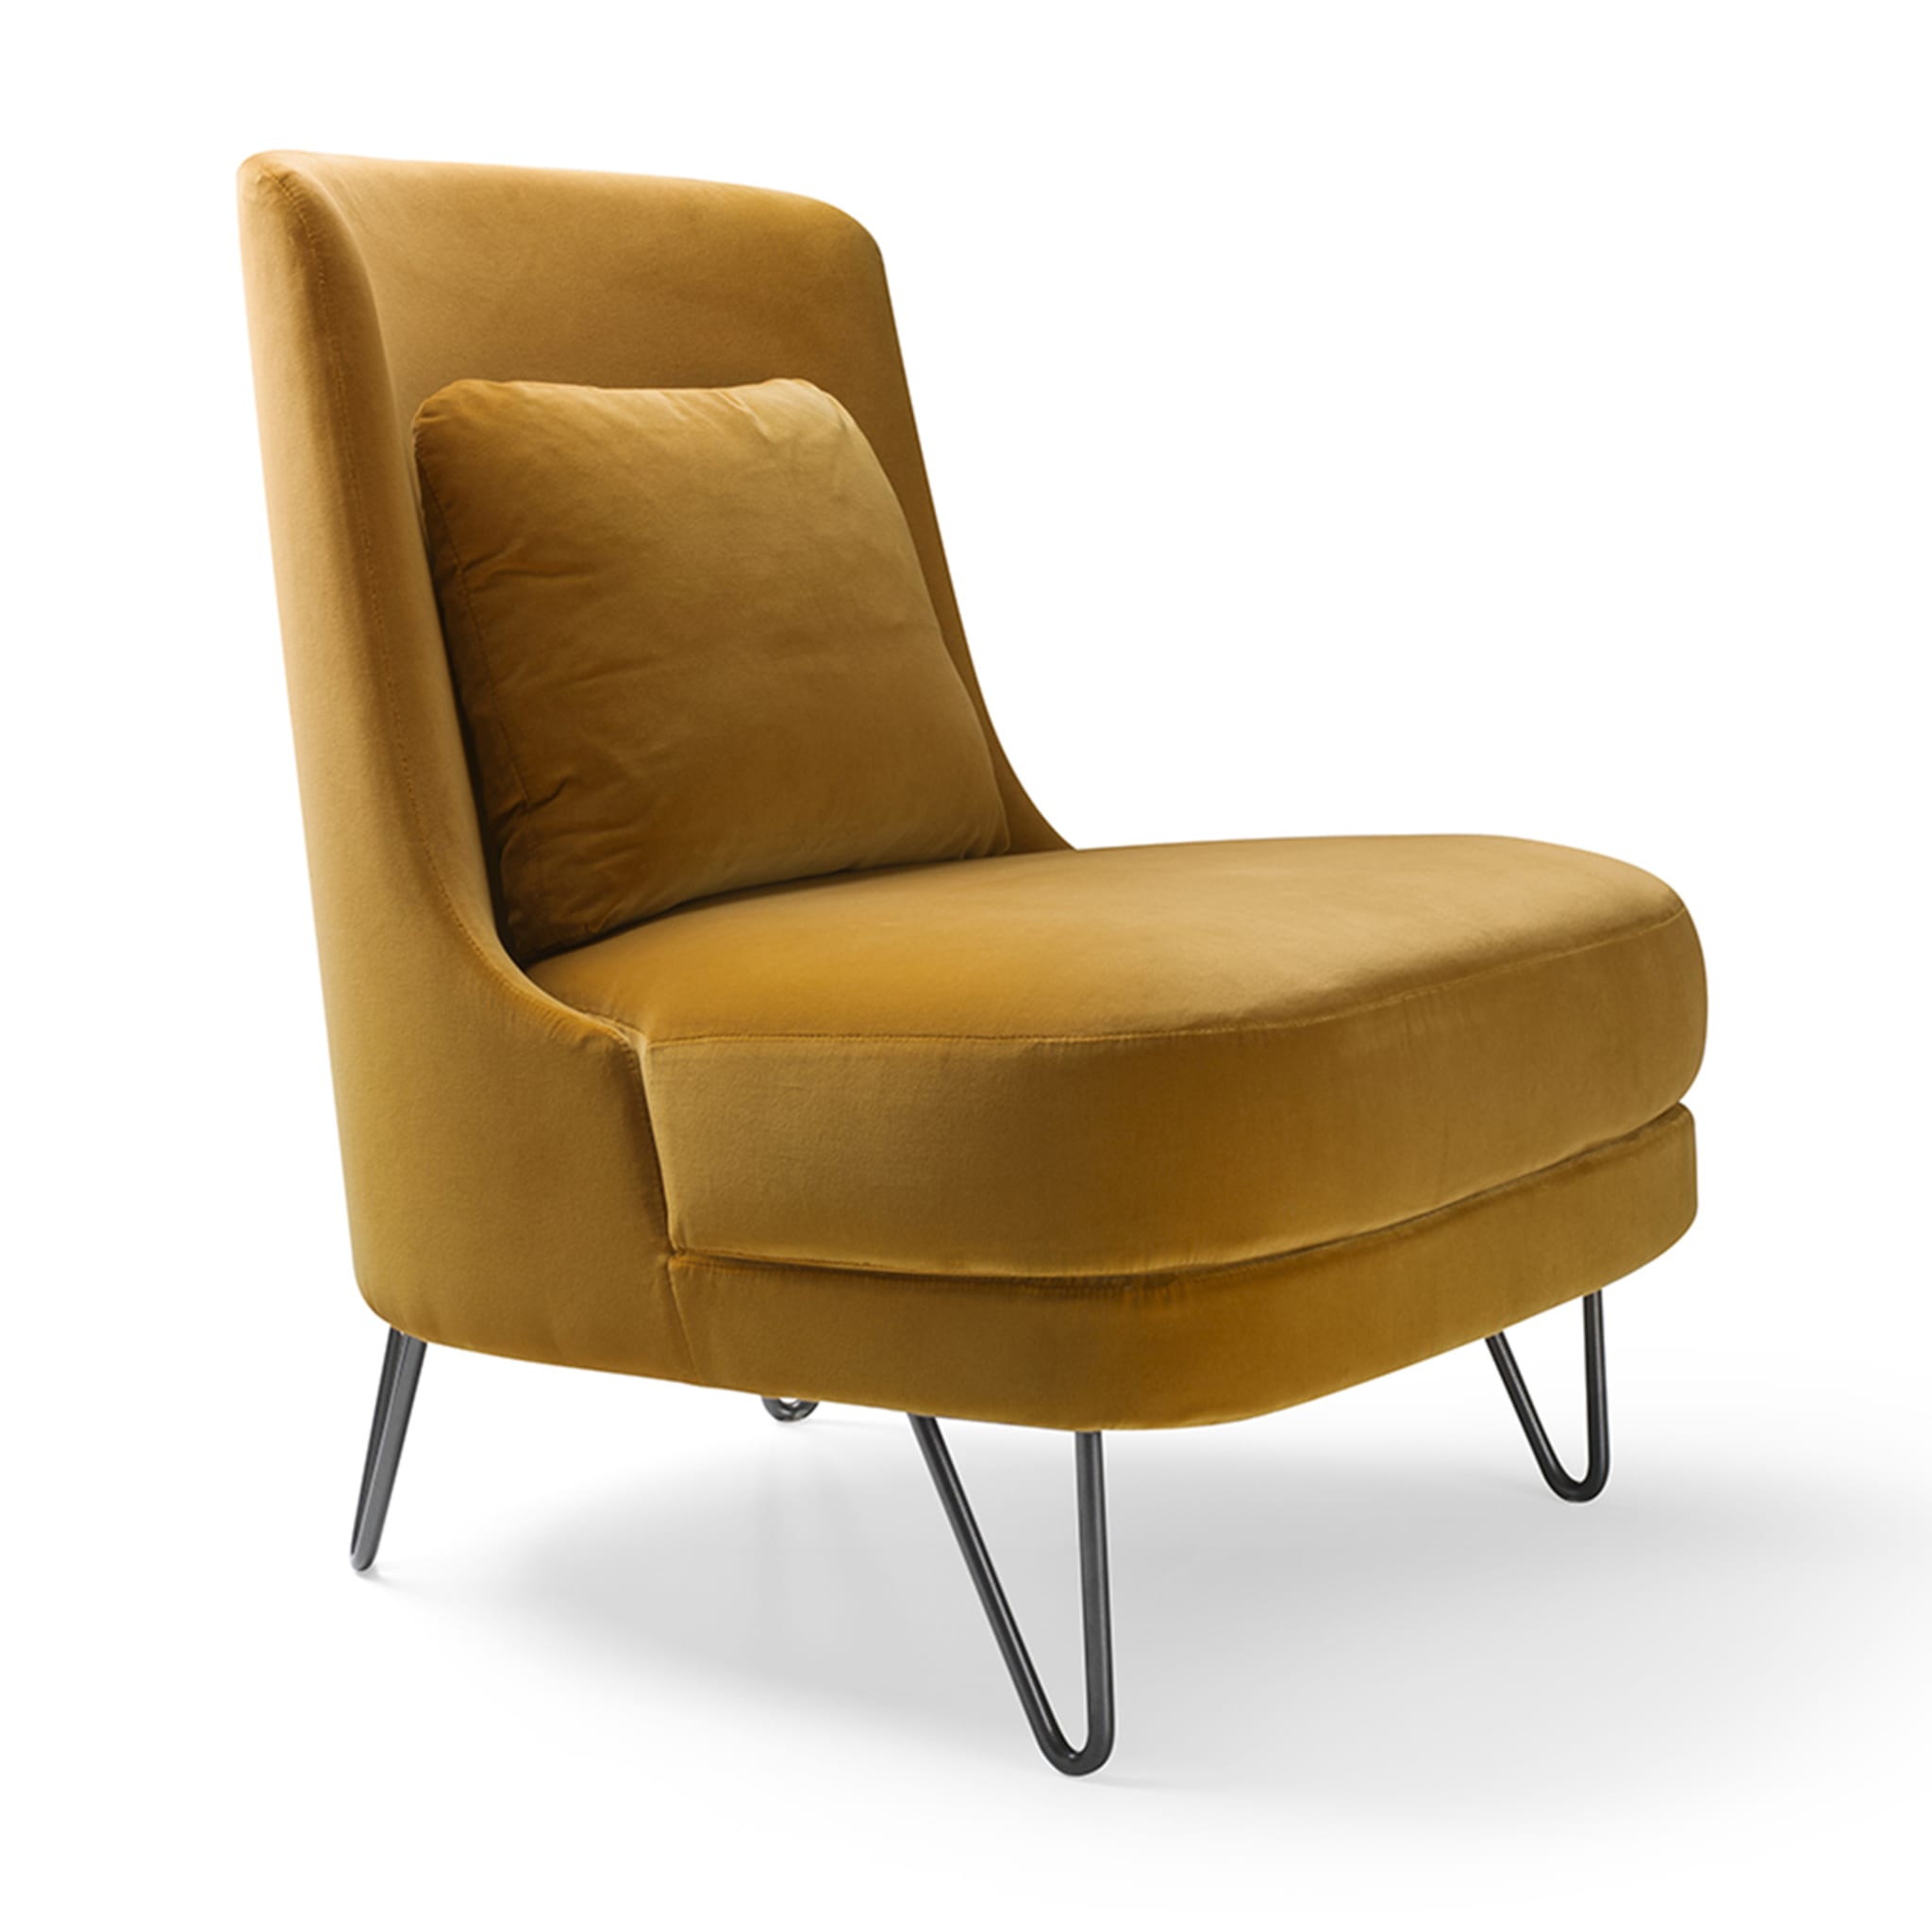 Chris Saffron-Yellow Lounge Chair - Alternative view 1